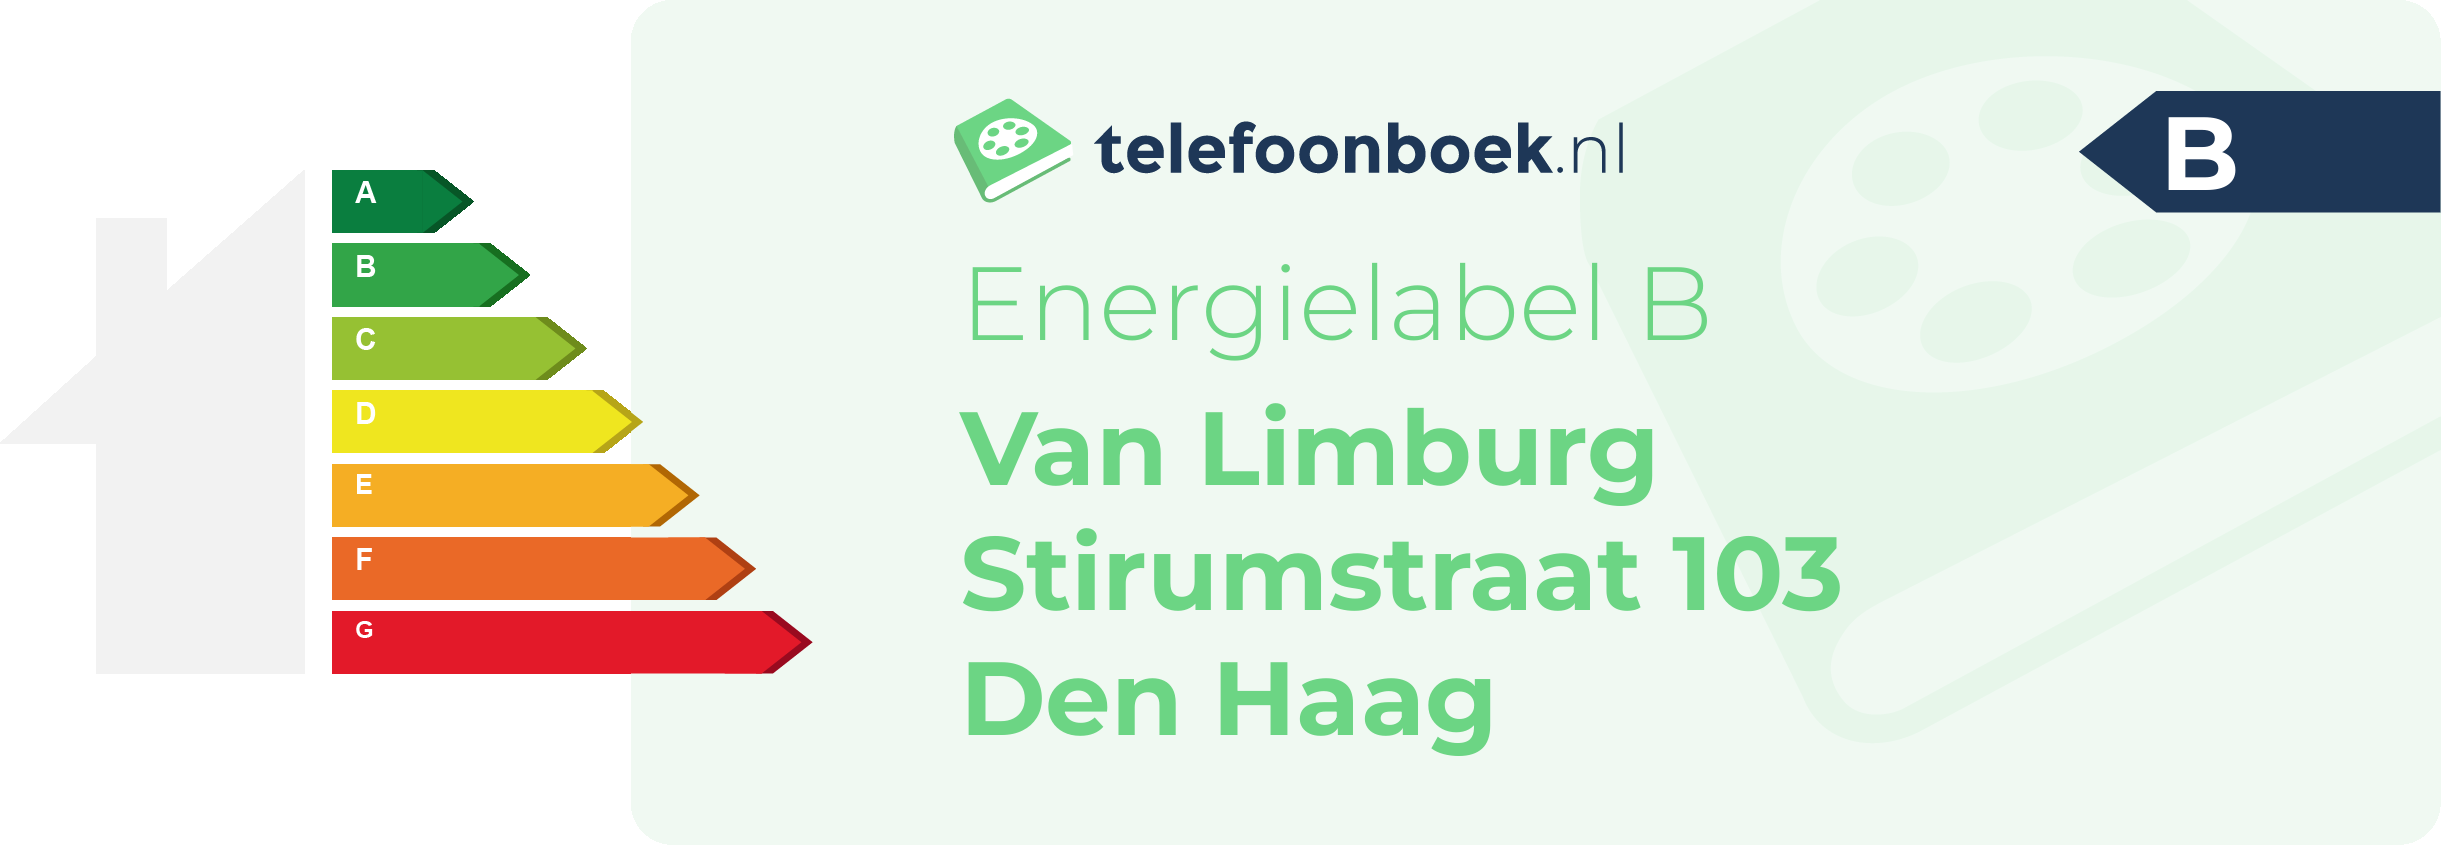 Energielabel Van Limburg Stirumstraat 103 Den Haag